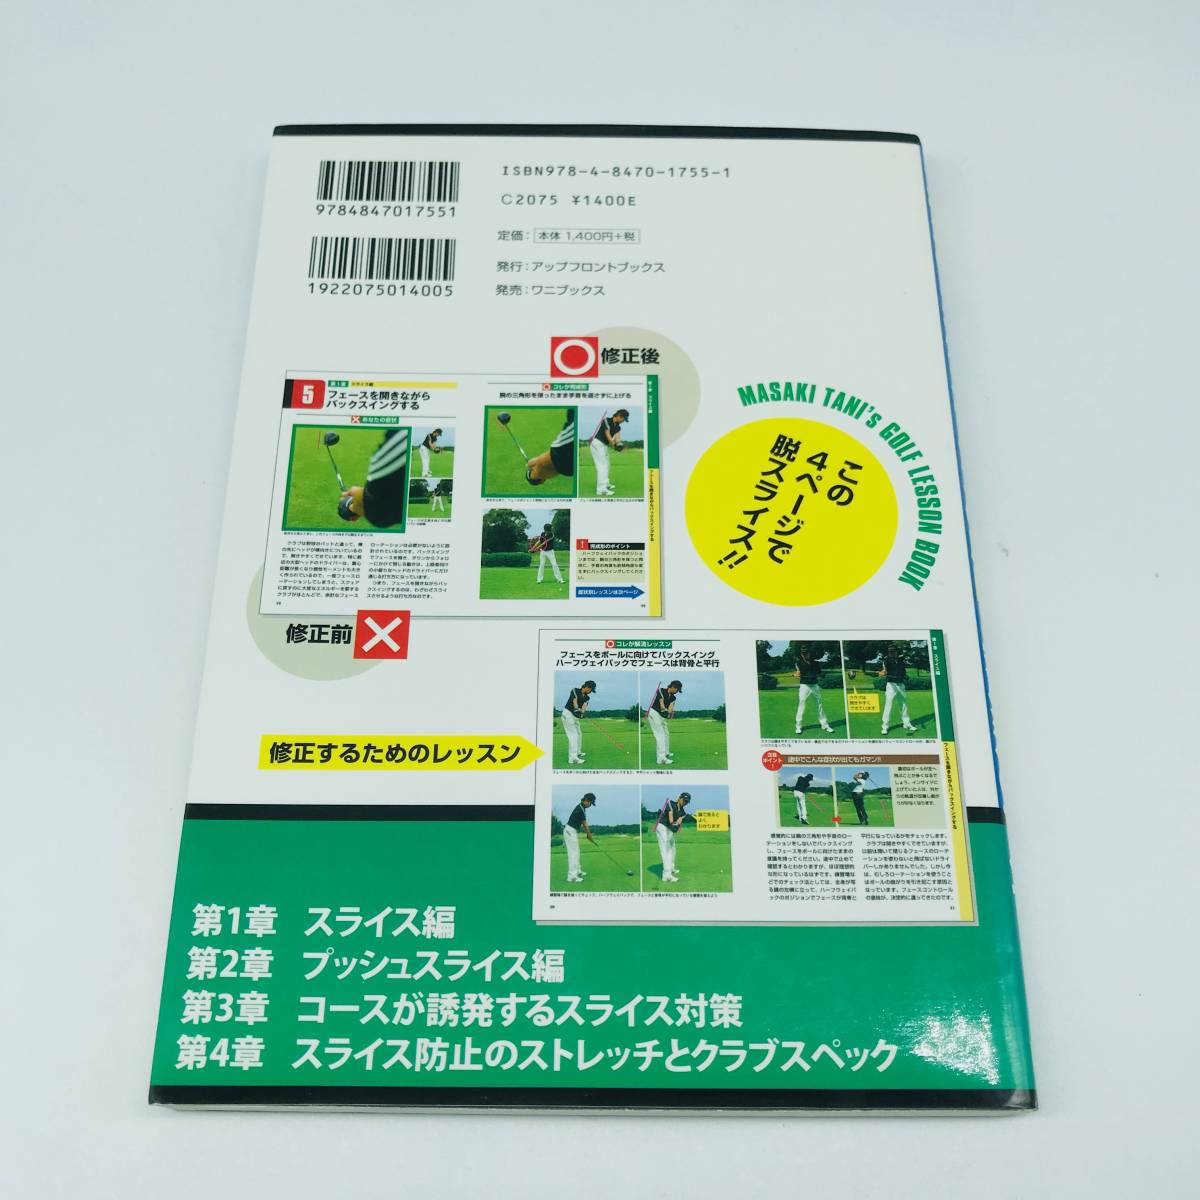 ... издание  ...    это    ... стул     причина  и  принятие мер  ...    все ！ ... перо  ...  рекомендуемая розничная цена 1400  йен + налог   4 страница    ... стул ！！  б/у  